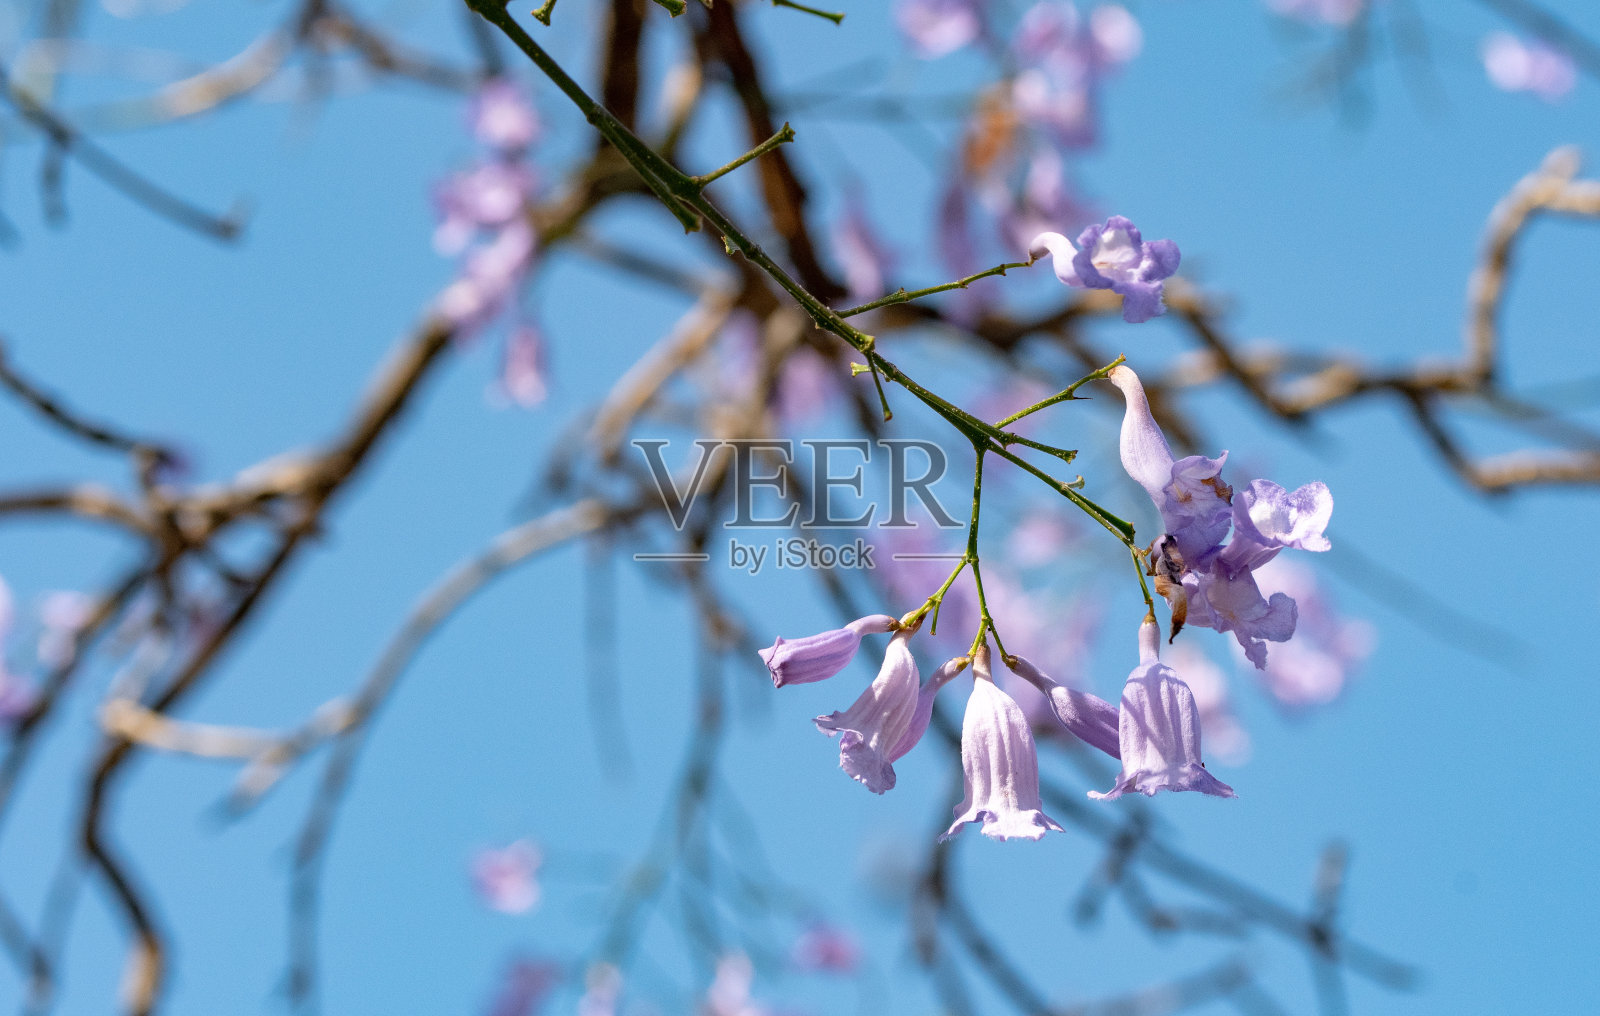 在春天蔚蓝的天空下开着丁香花的树照片摄影图片